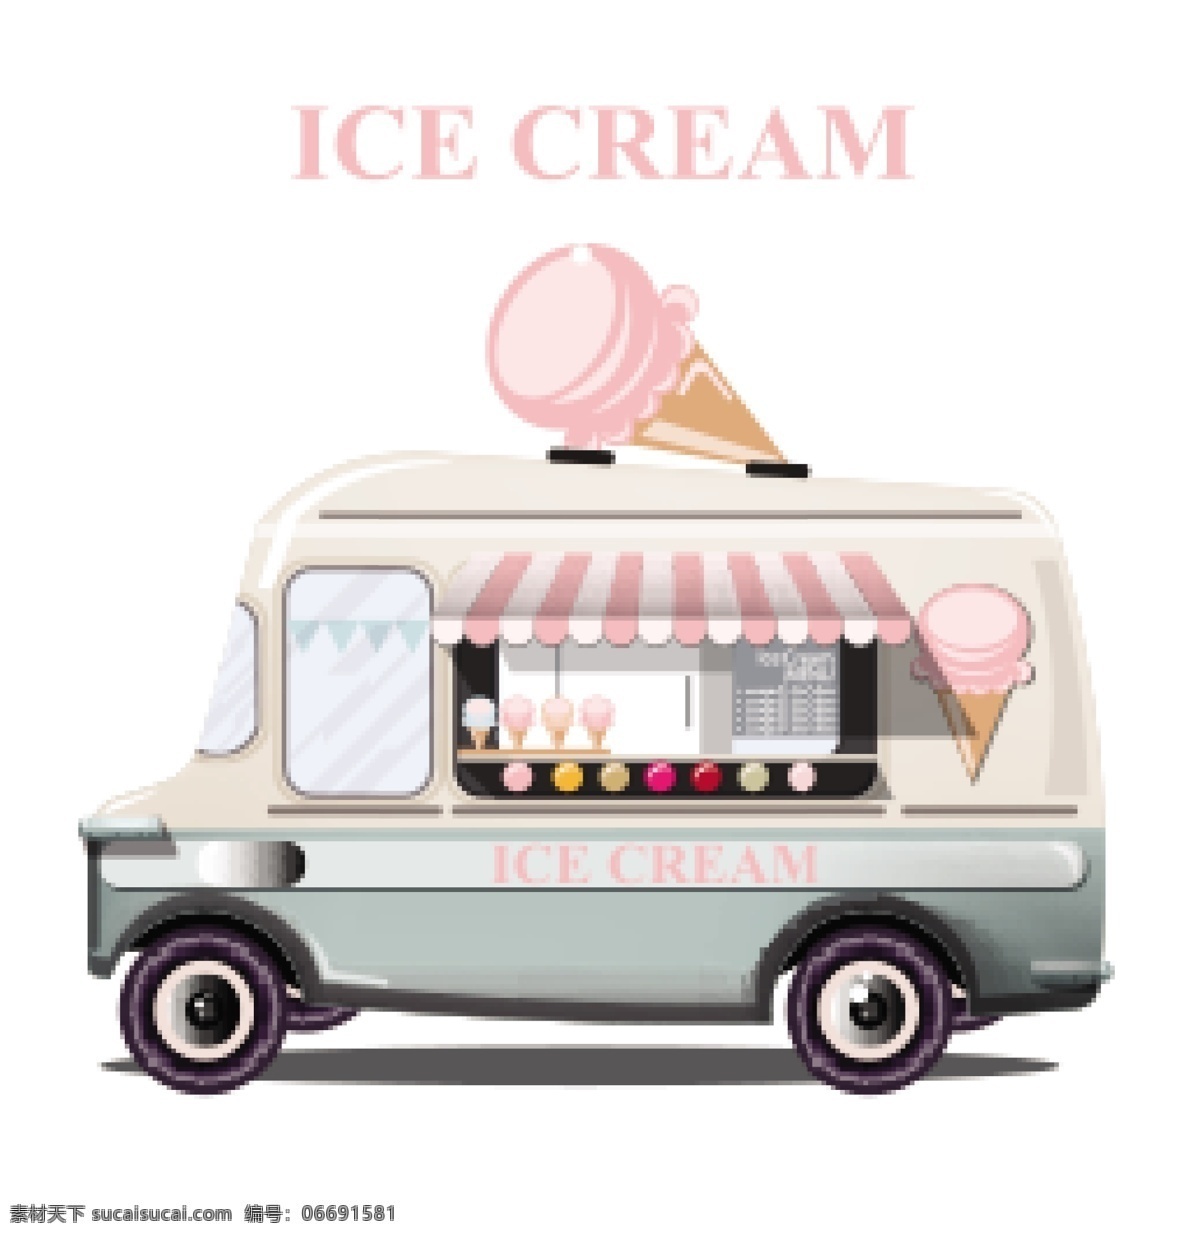 冰淇淋卡车 冰淇淋 卡车 冷饮 餐车 节日 生活百科 餐饮美食